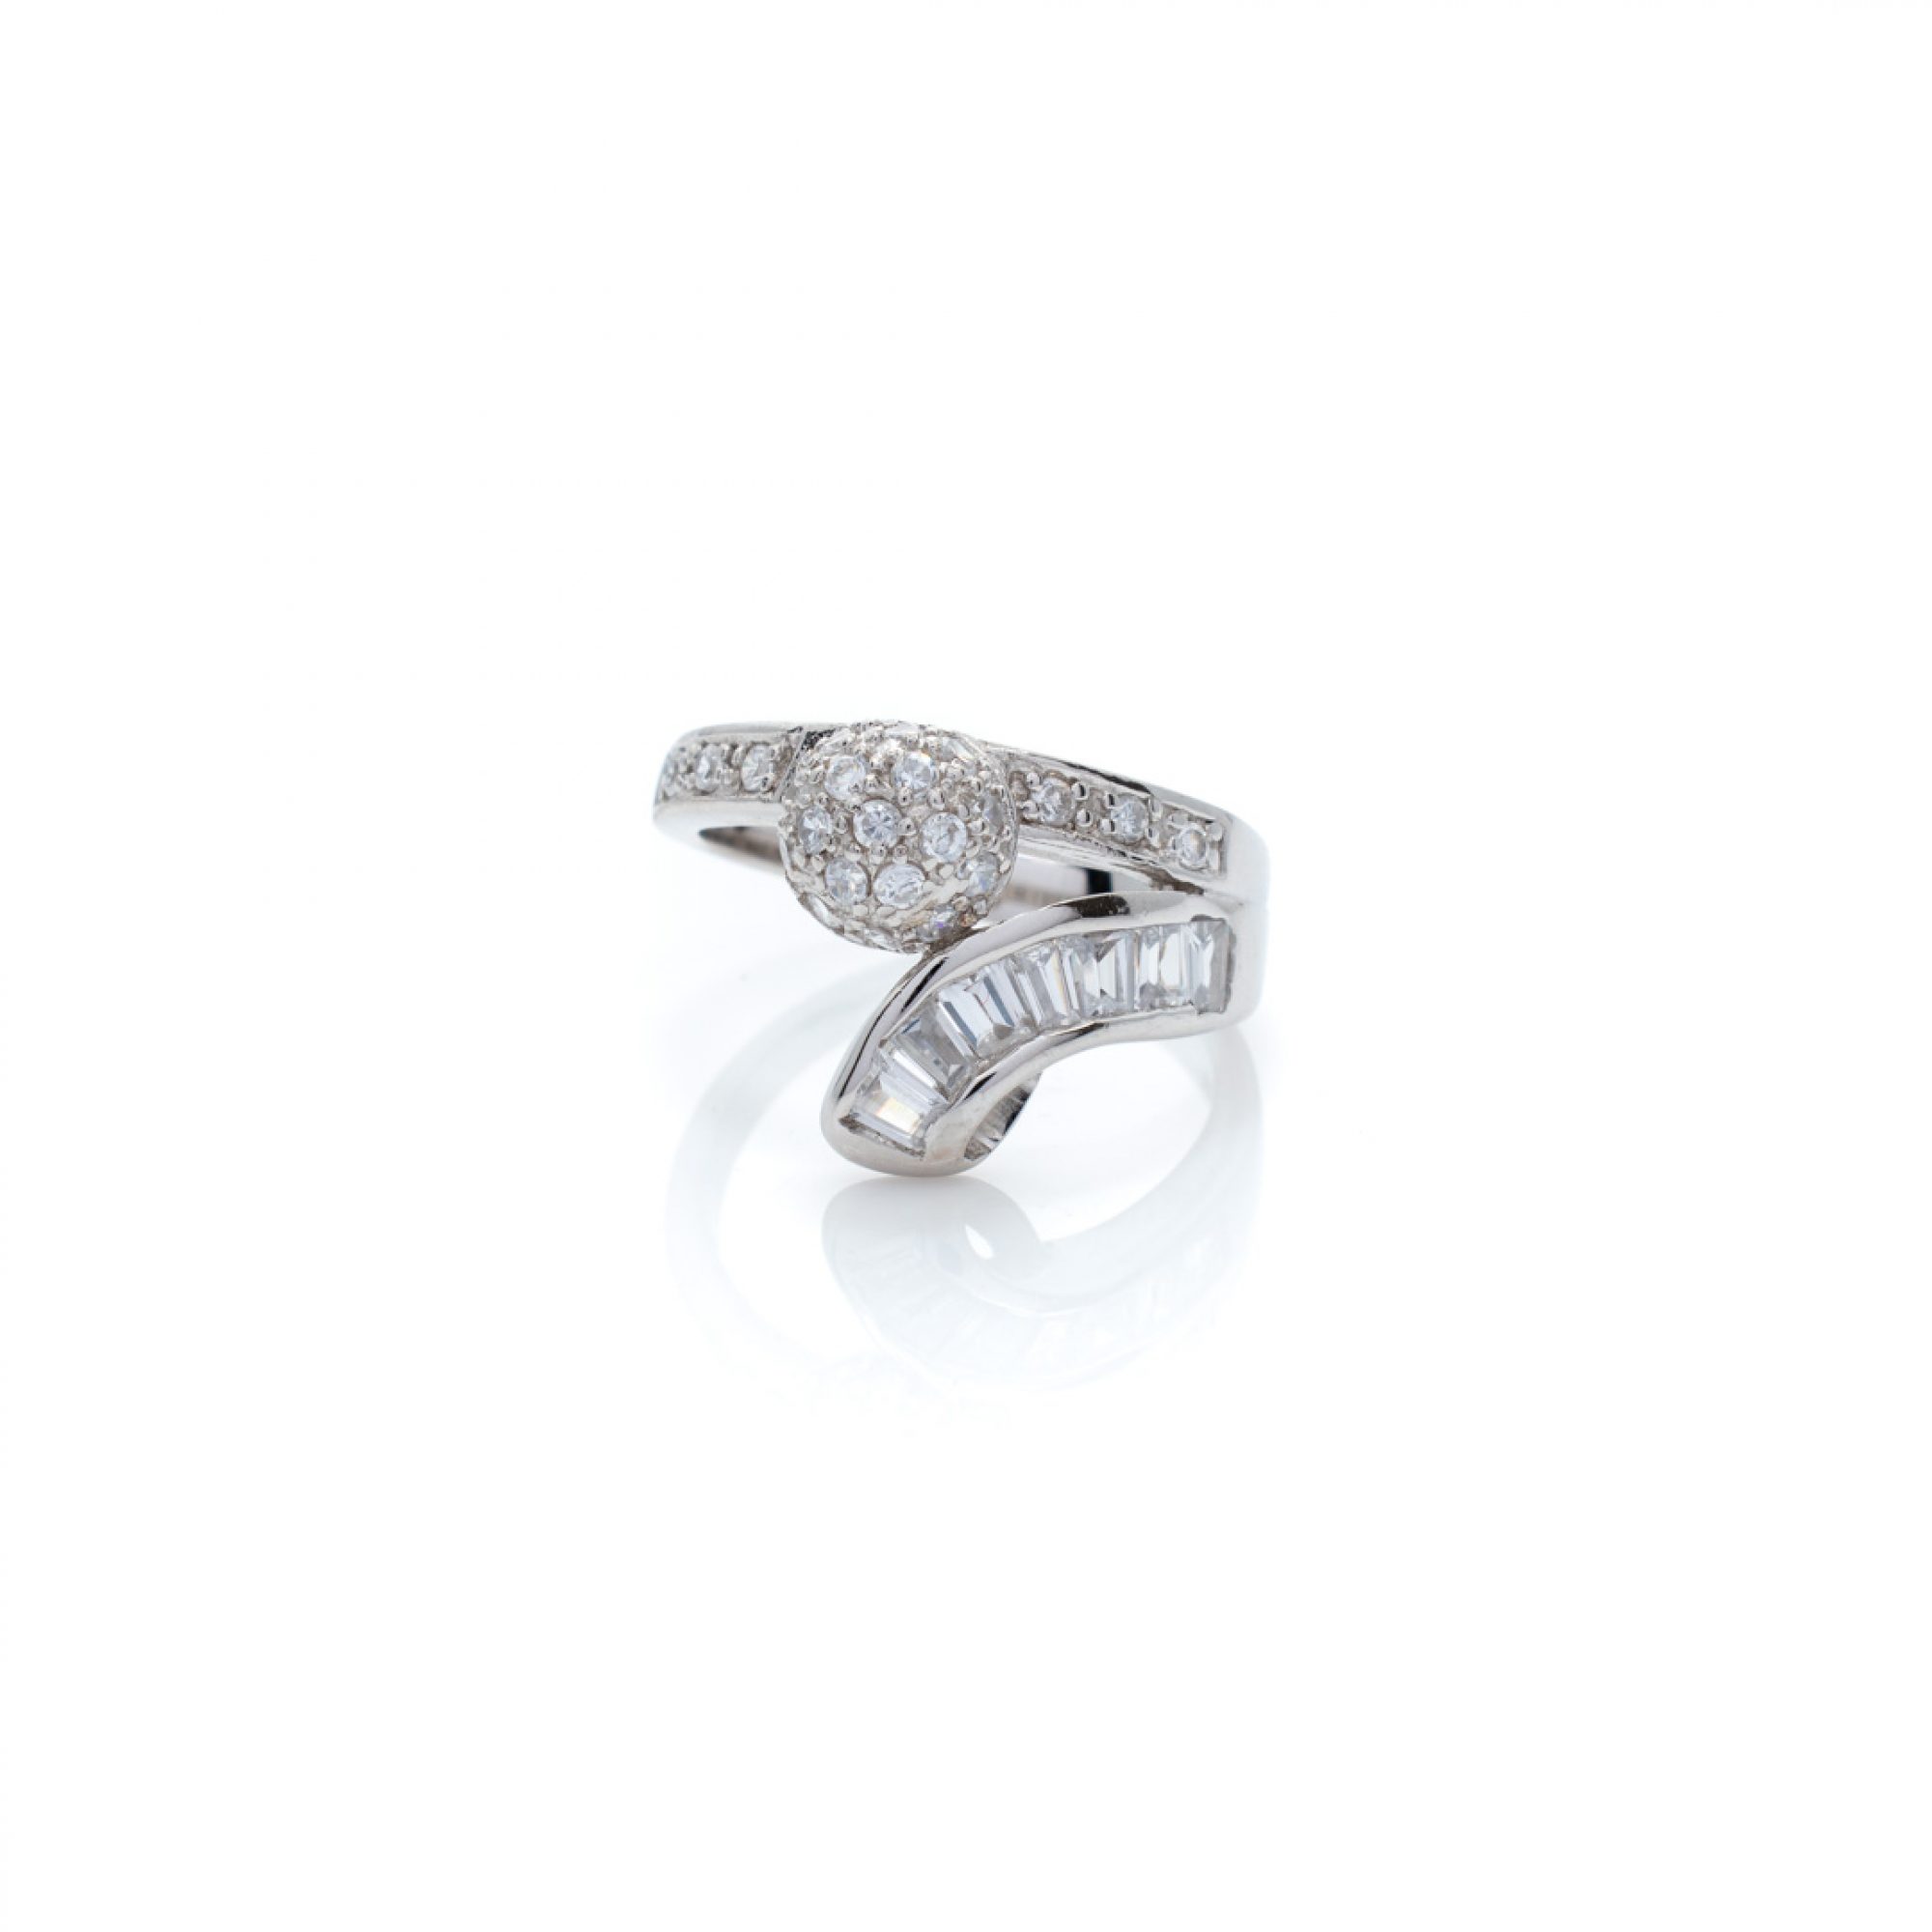 Ring with zircon stones